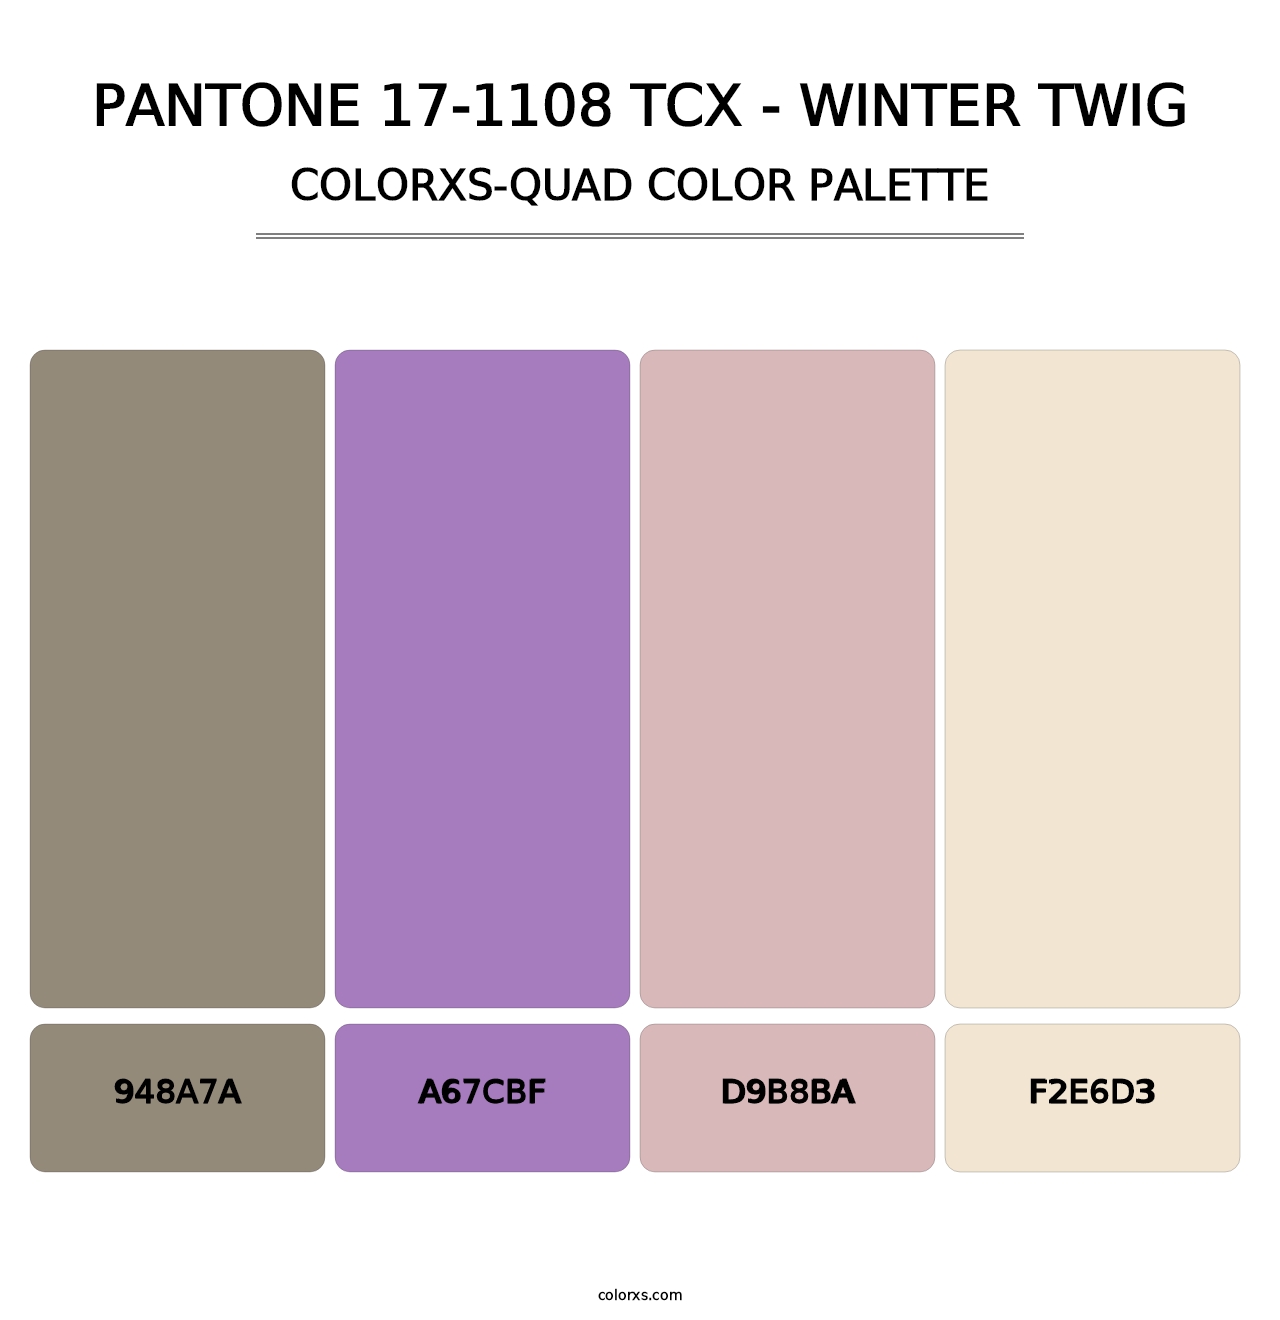 PANTONE 17-1108 TCX - Winter Twig - Colorxs Quad Palette